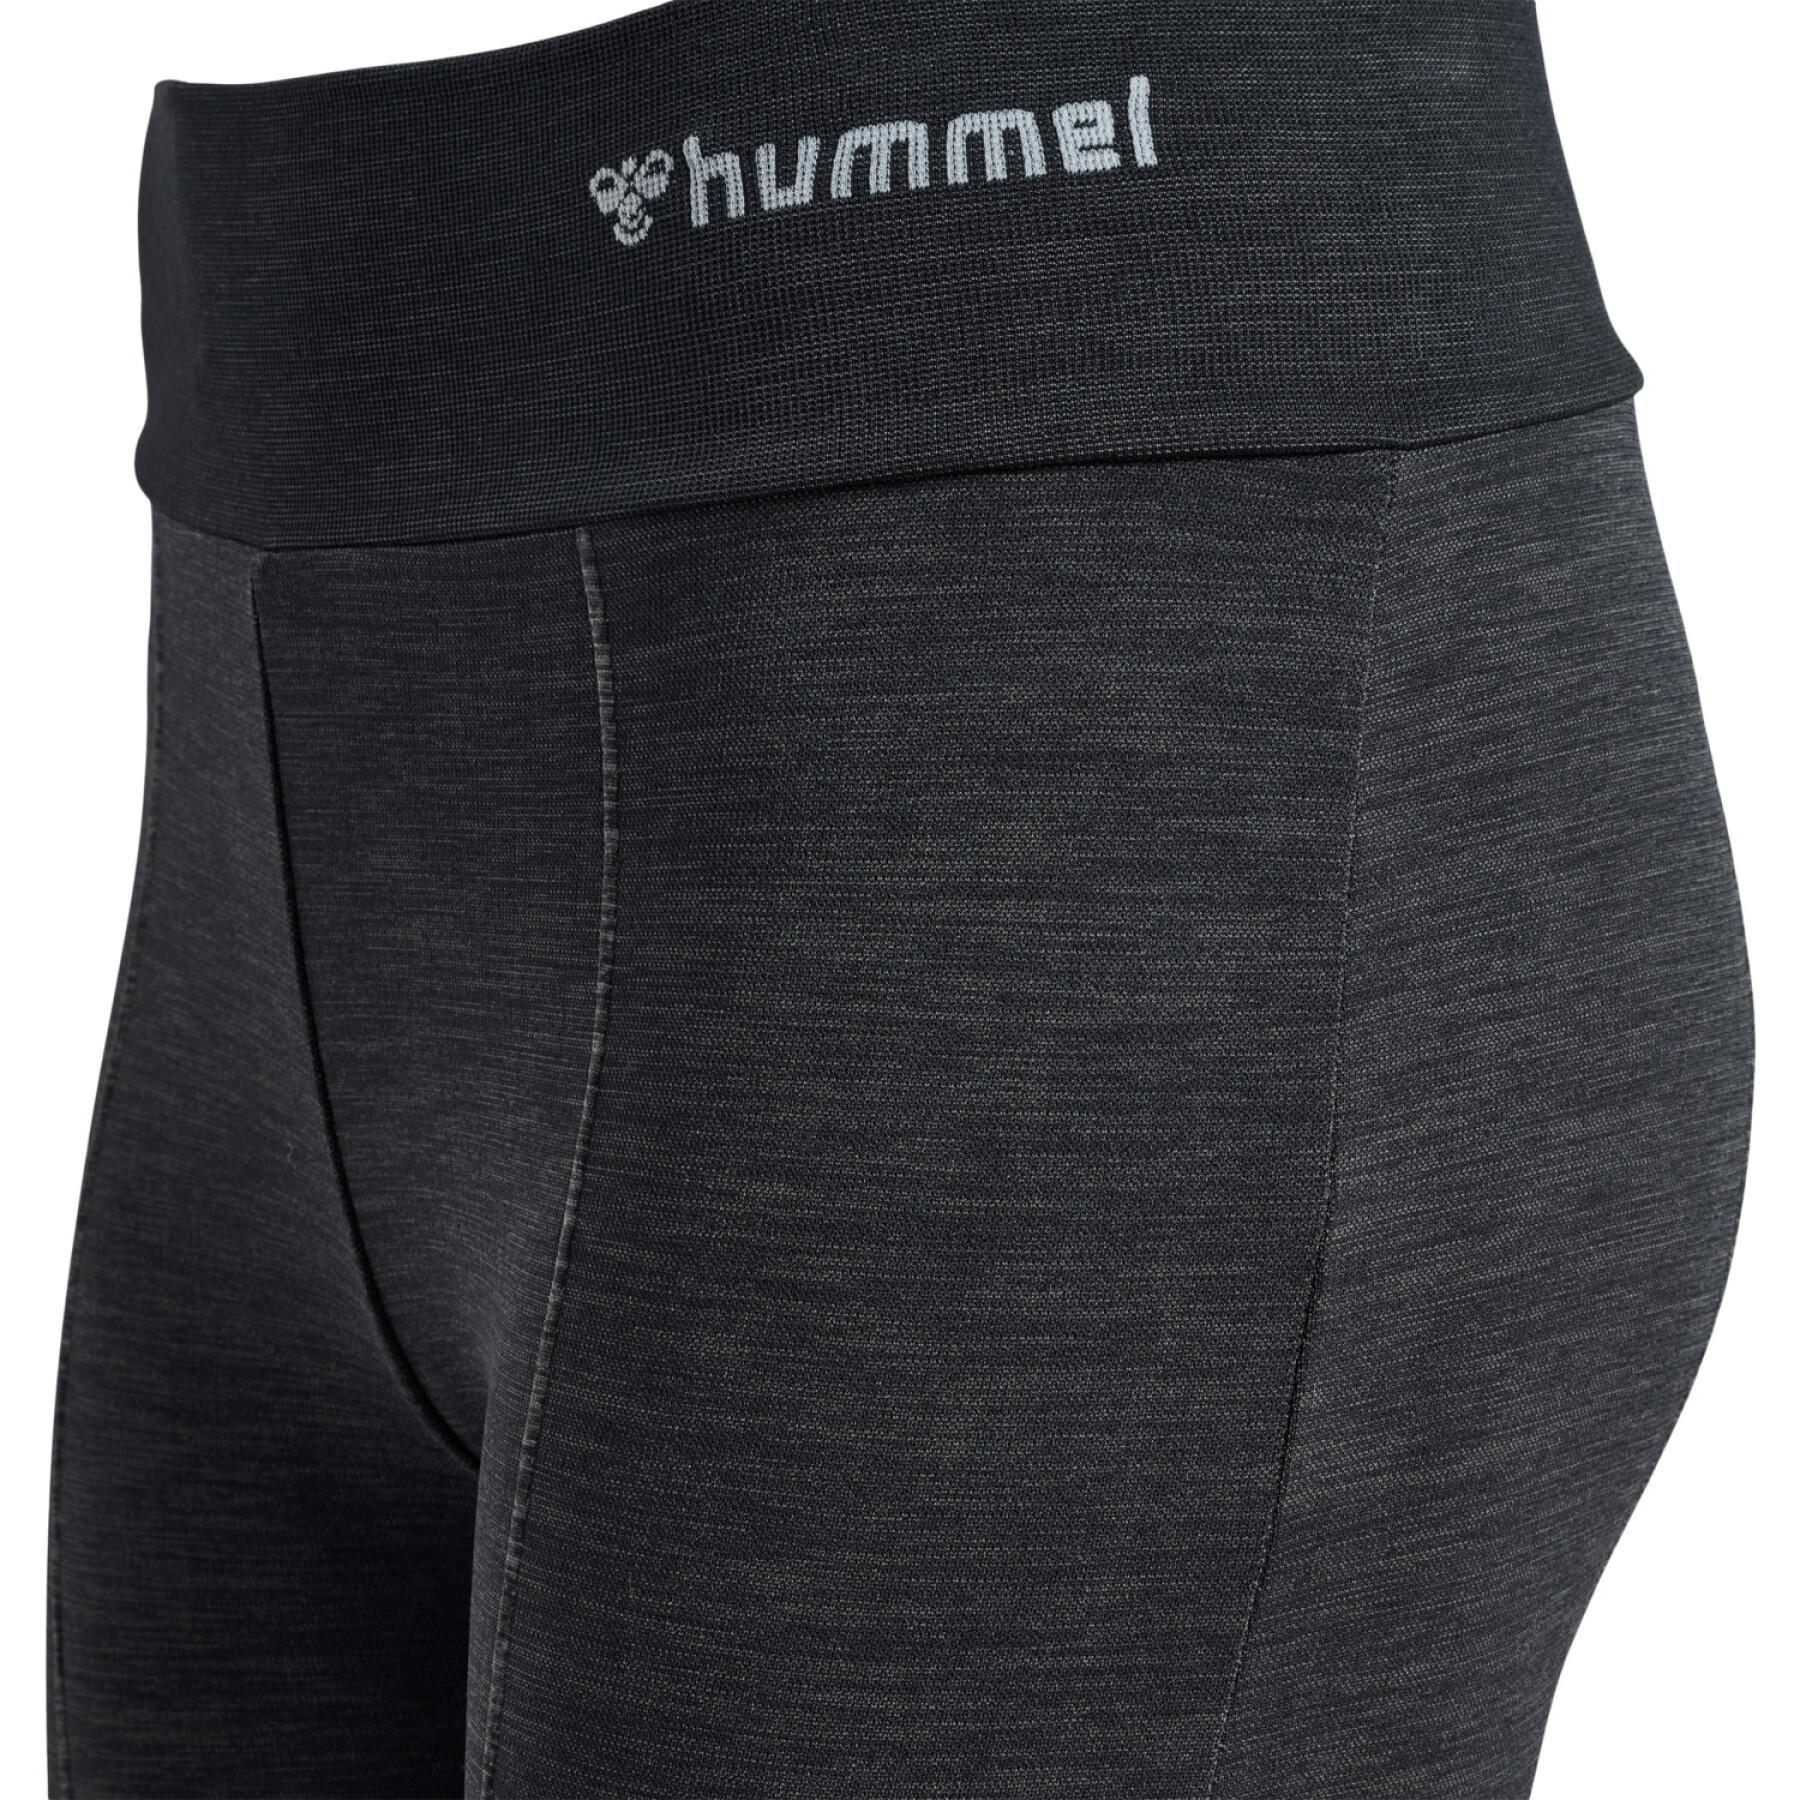 Pernas de legging queimadas de meia altura de mulheres Hummel MT Ivy